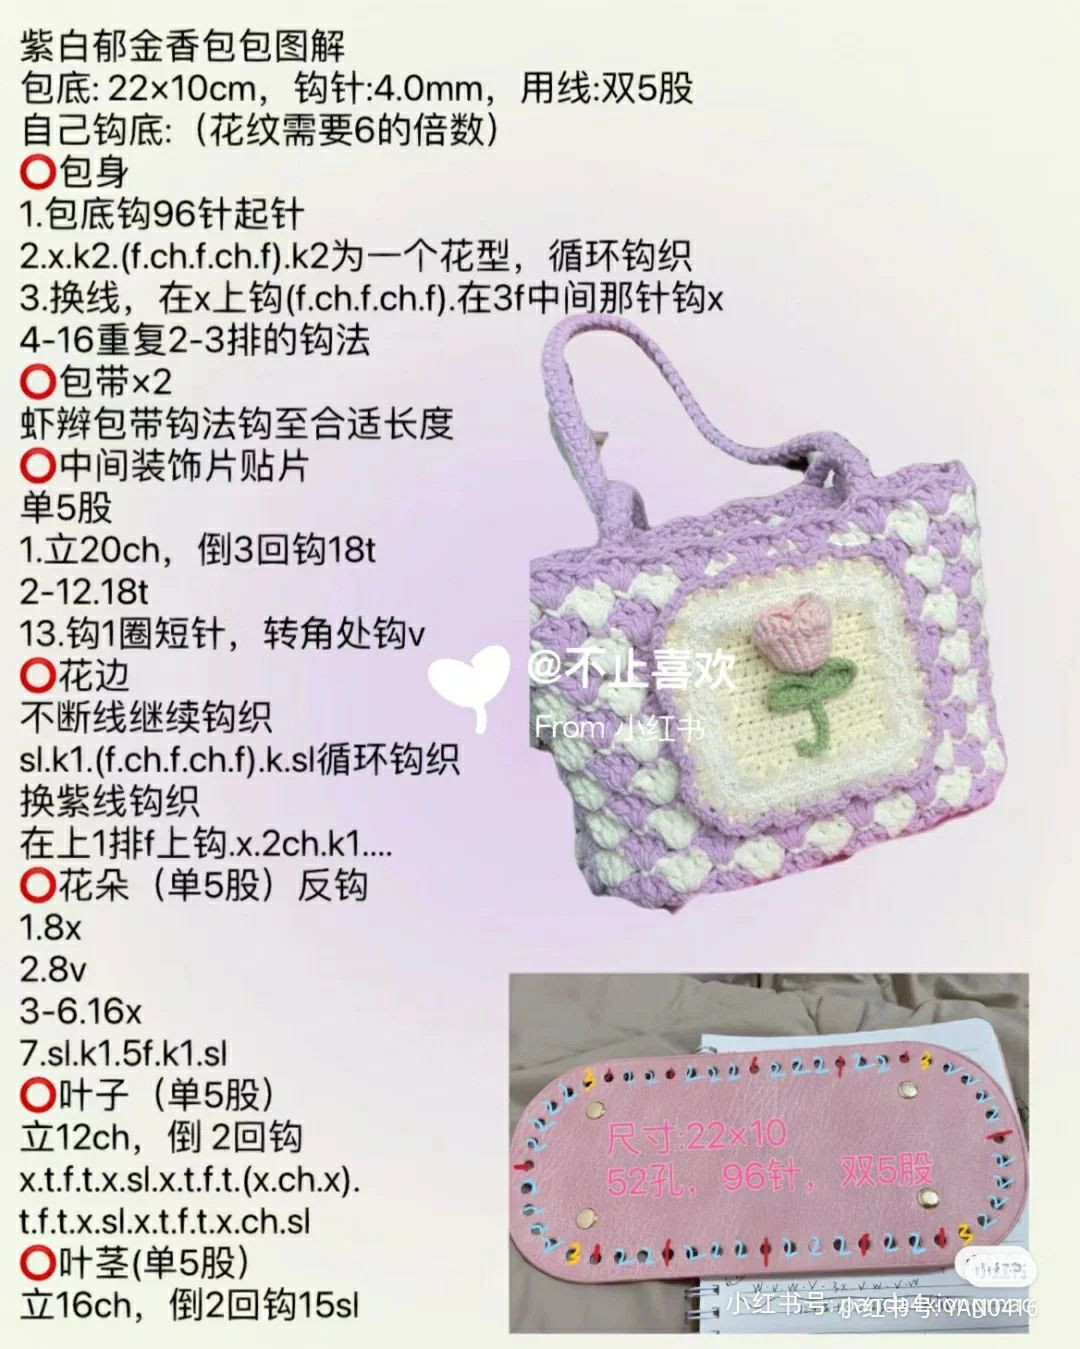 Crochet patterns for star handbags, tulip handbags